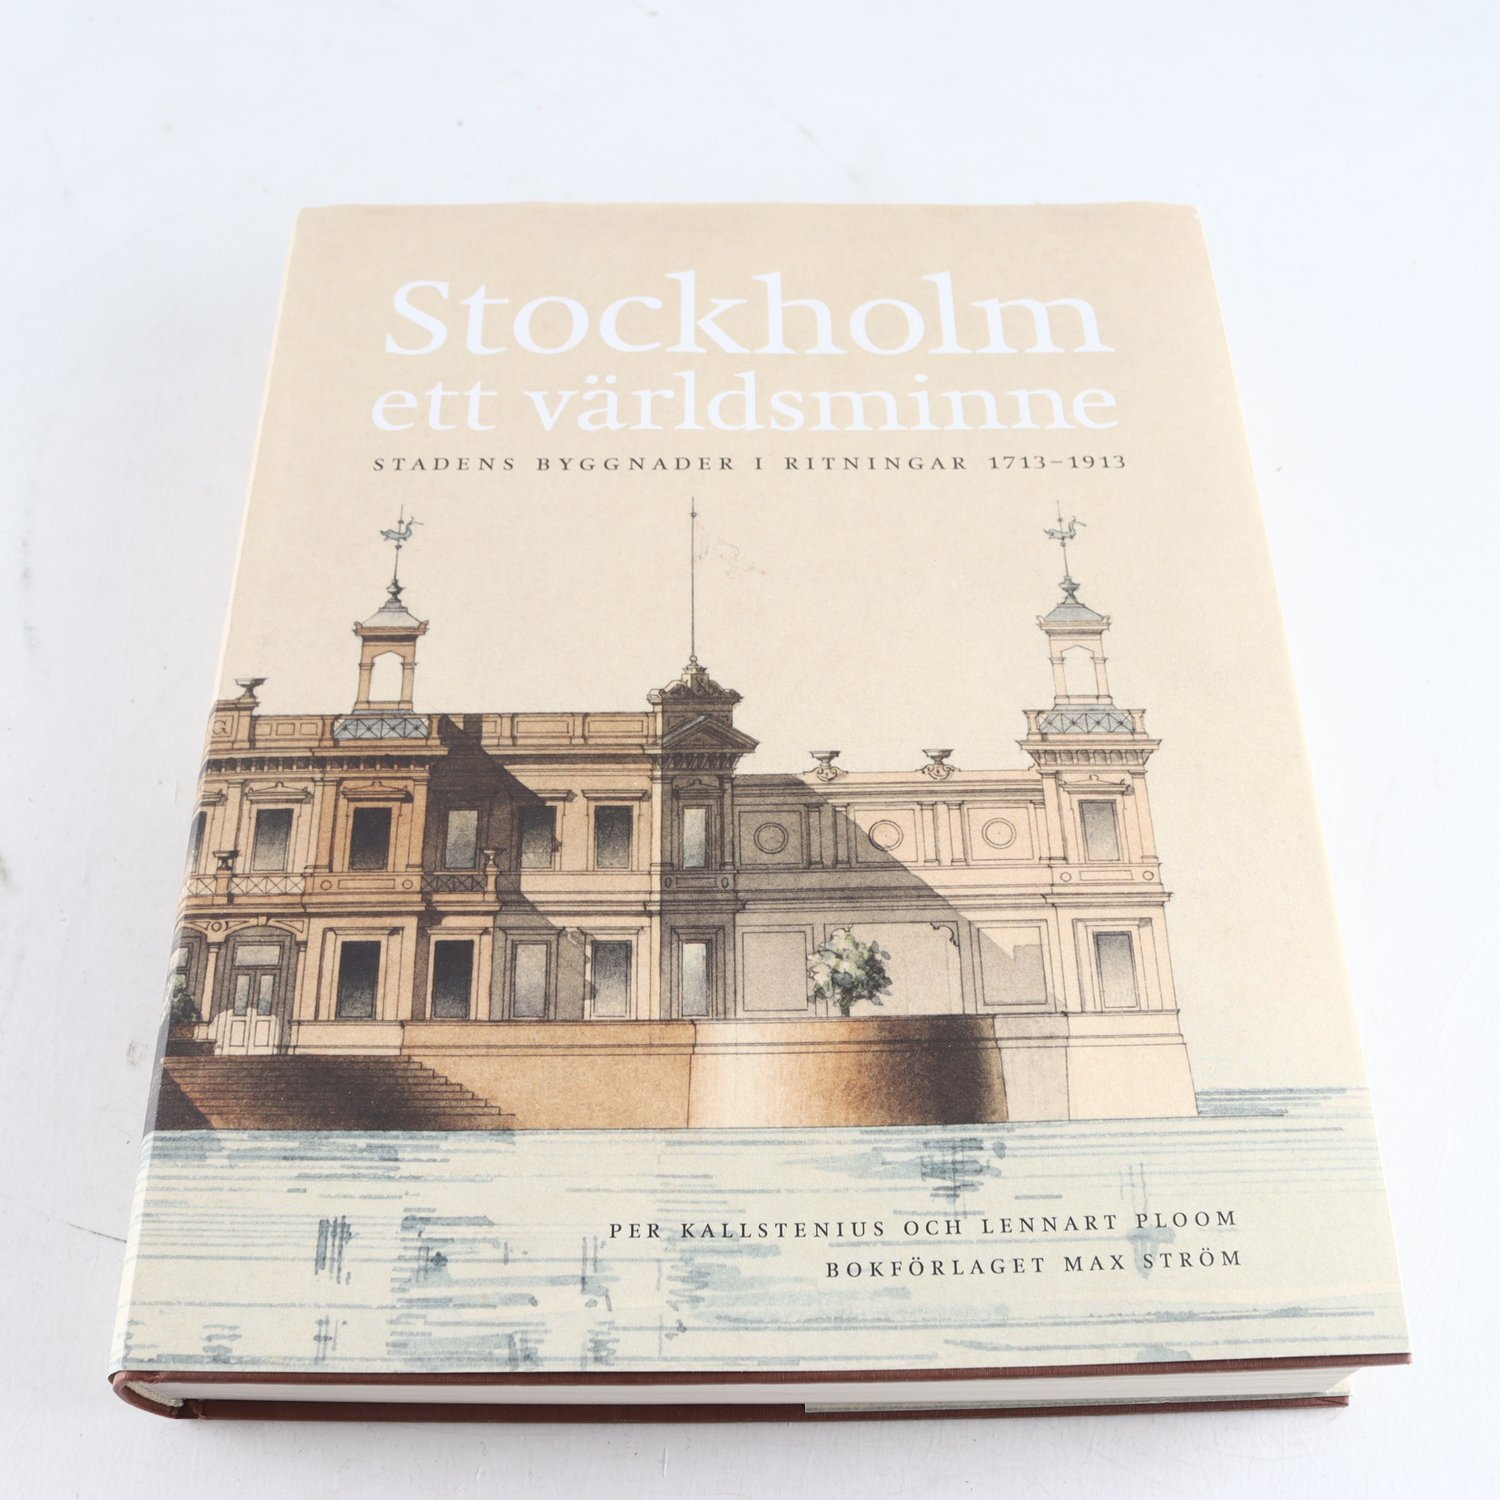 Stockholm ett världsminne: Stadens byggnader i ritningar 1713-1913